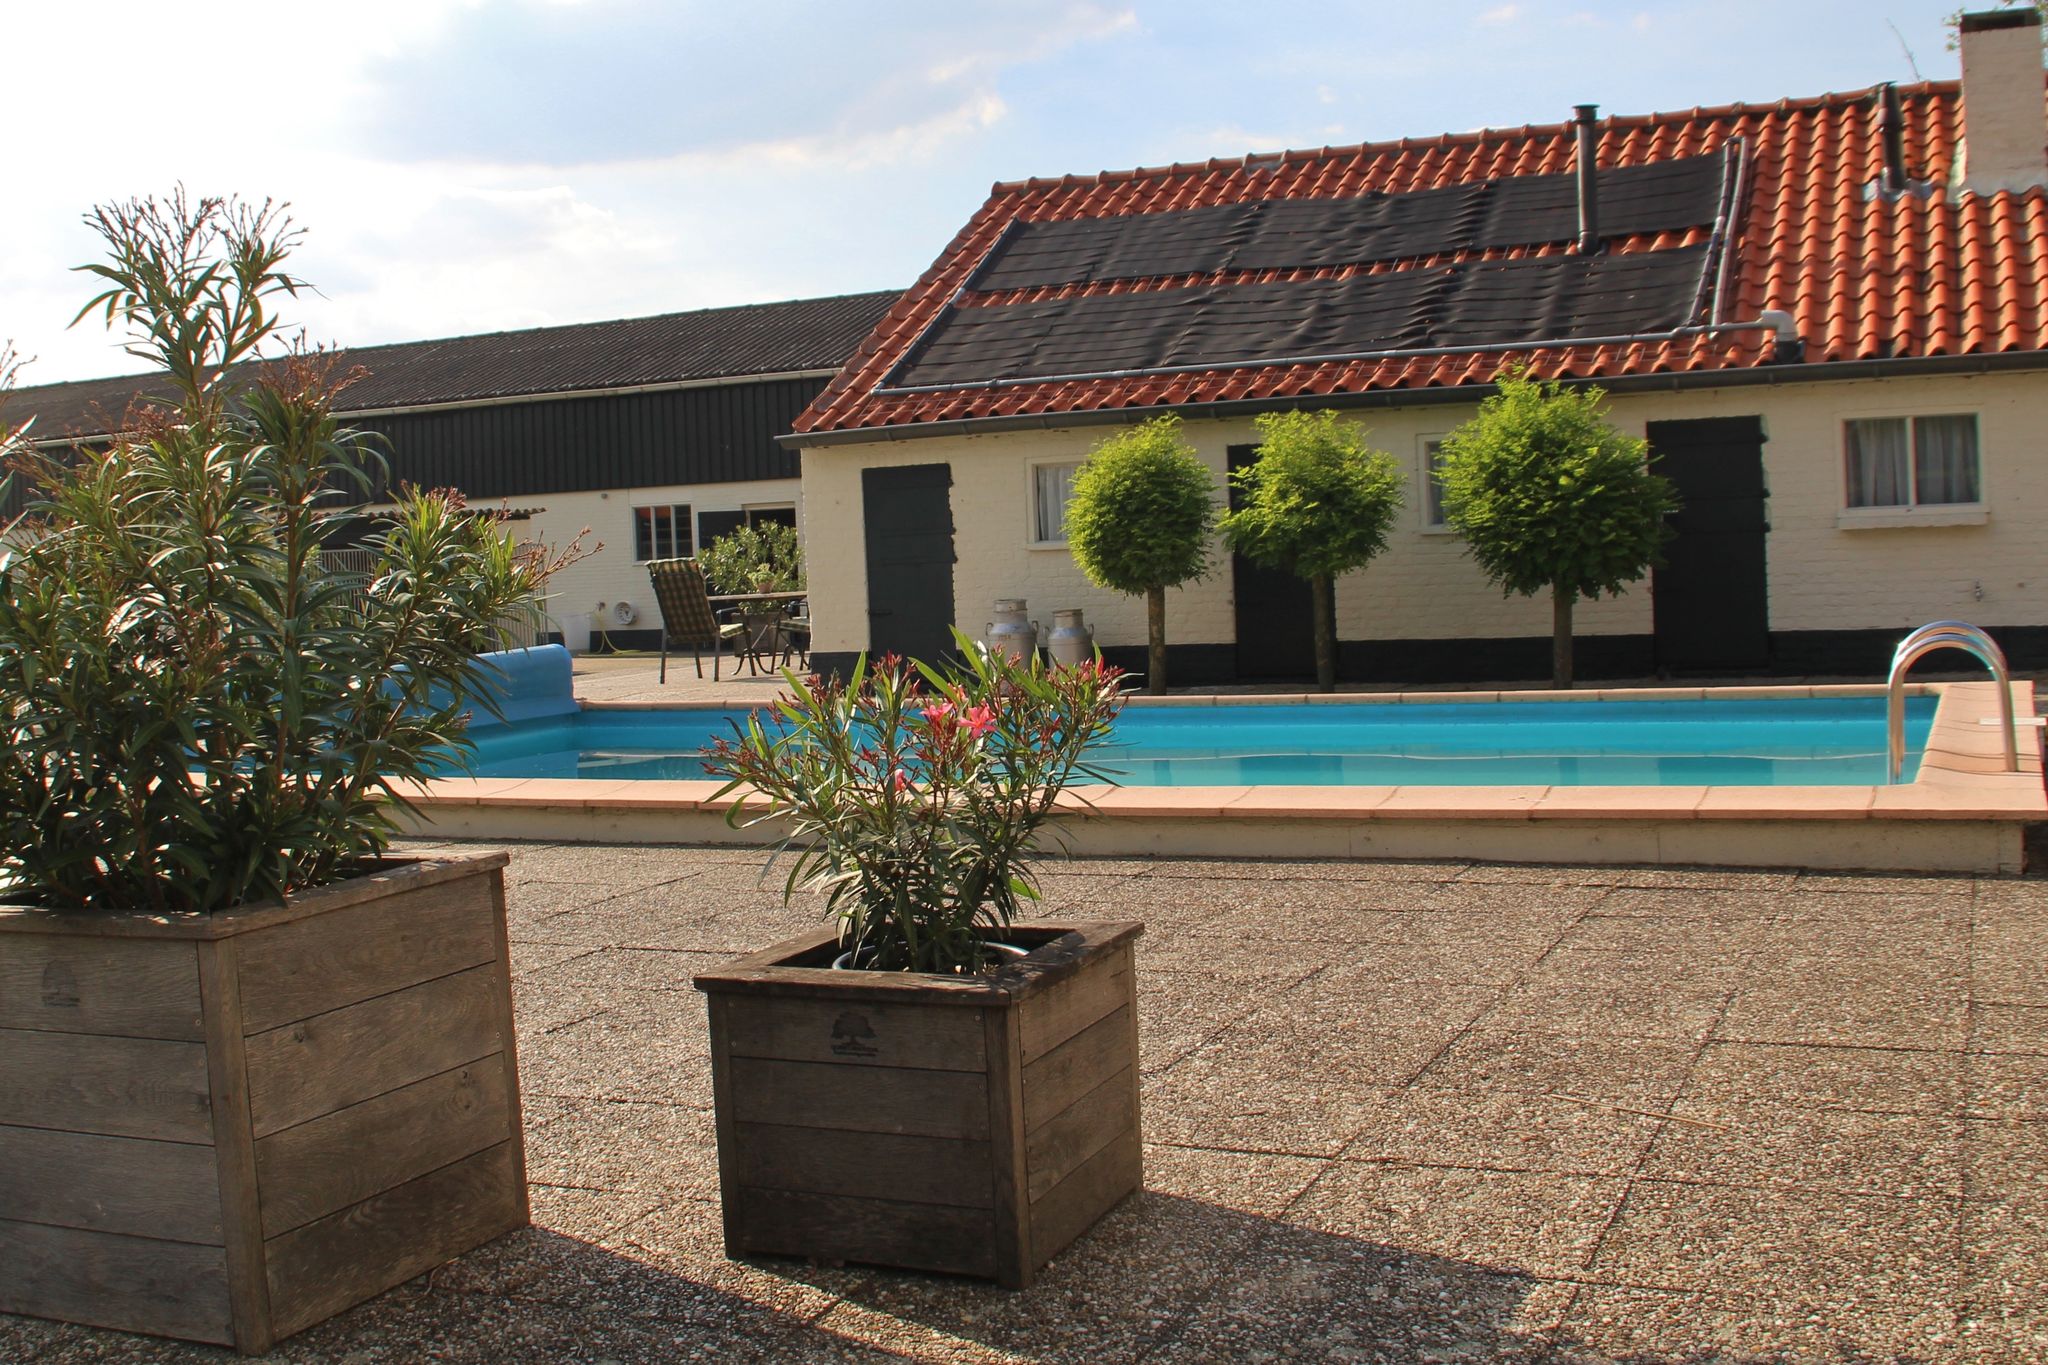 Gezellig vakantiehuis in Brabant met zwembad